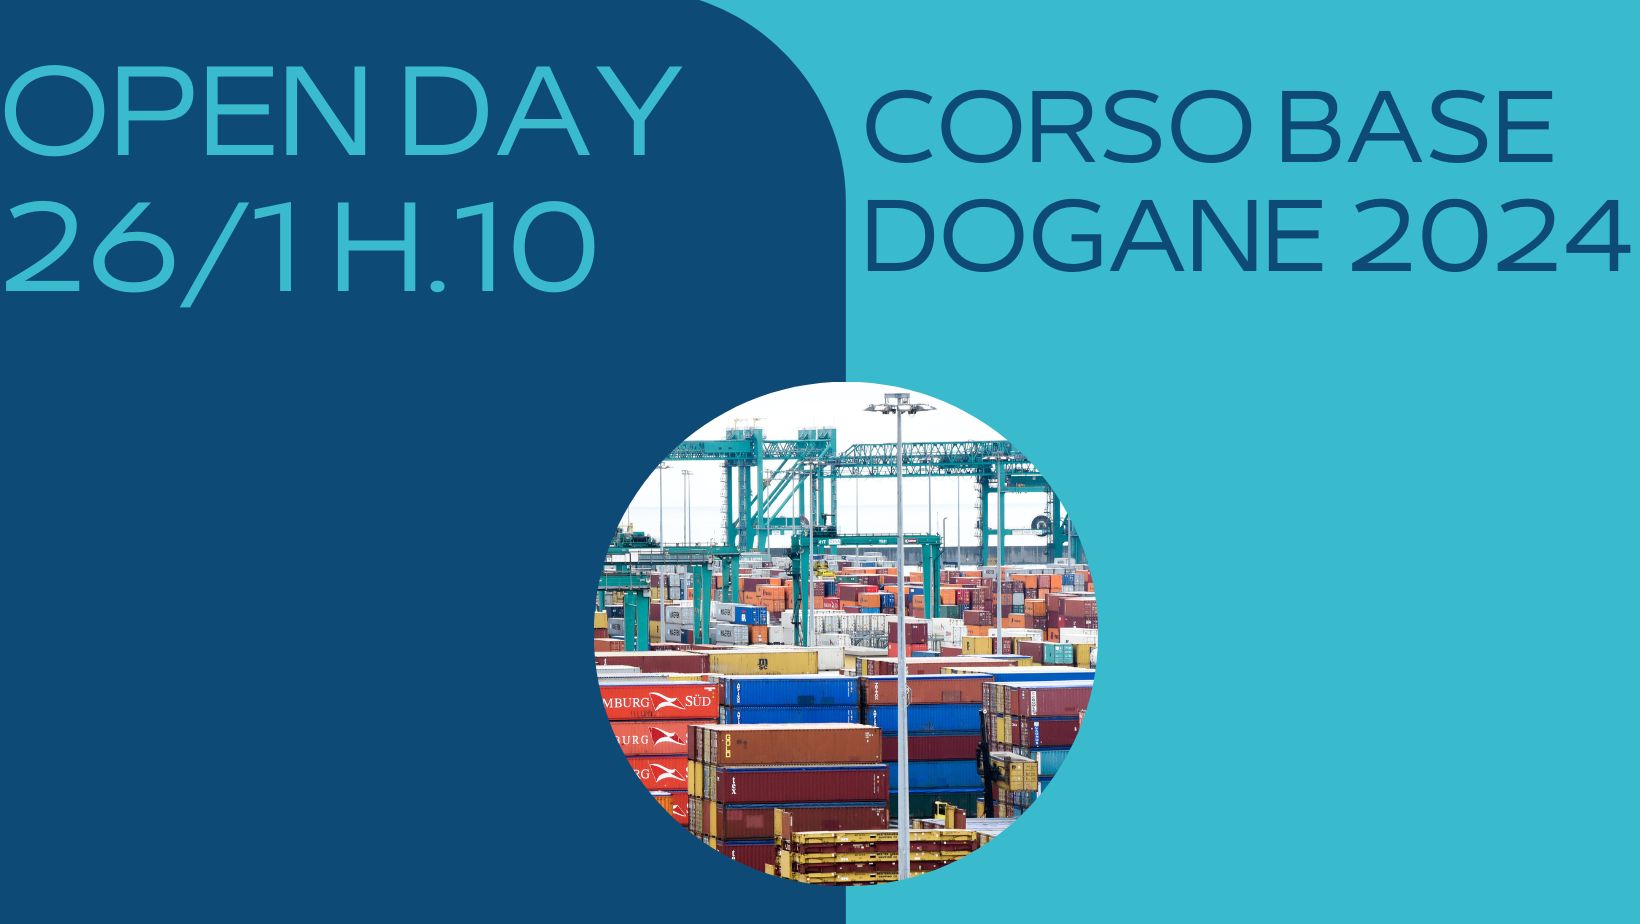 Terza Edizione Corso Base Dogane 2024 open day